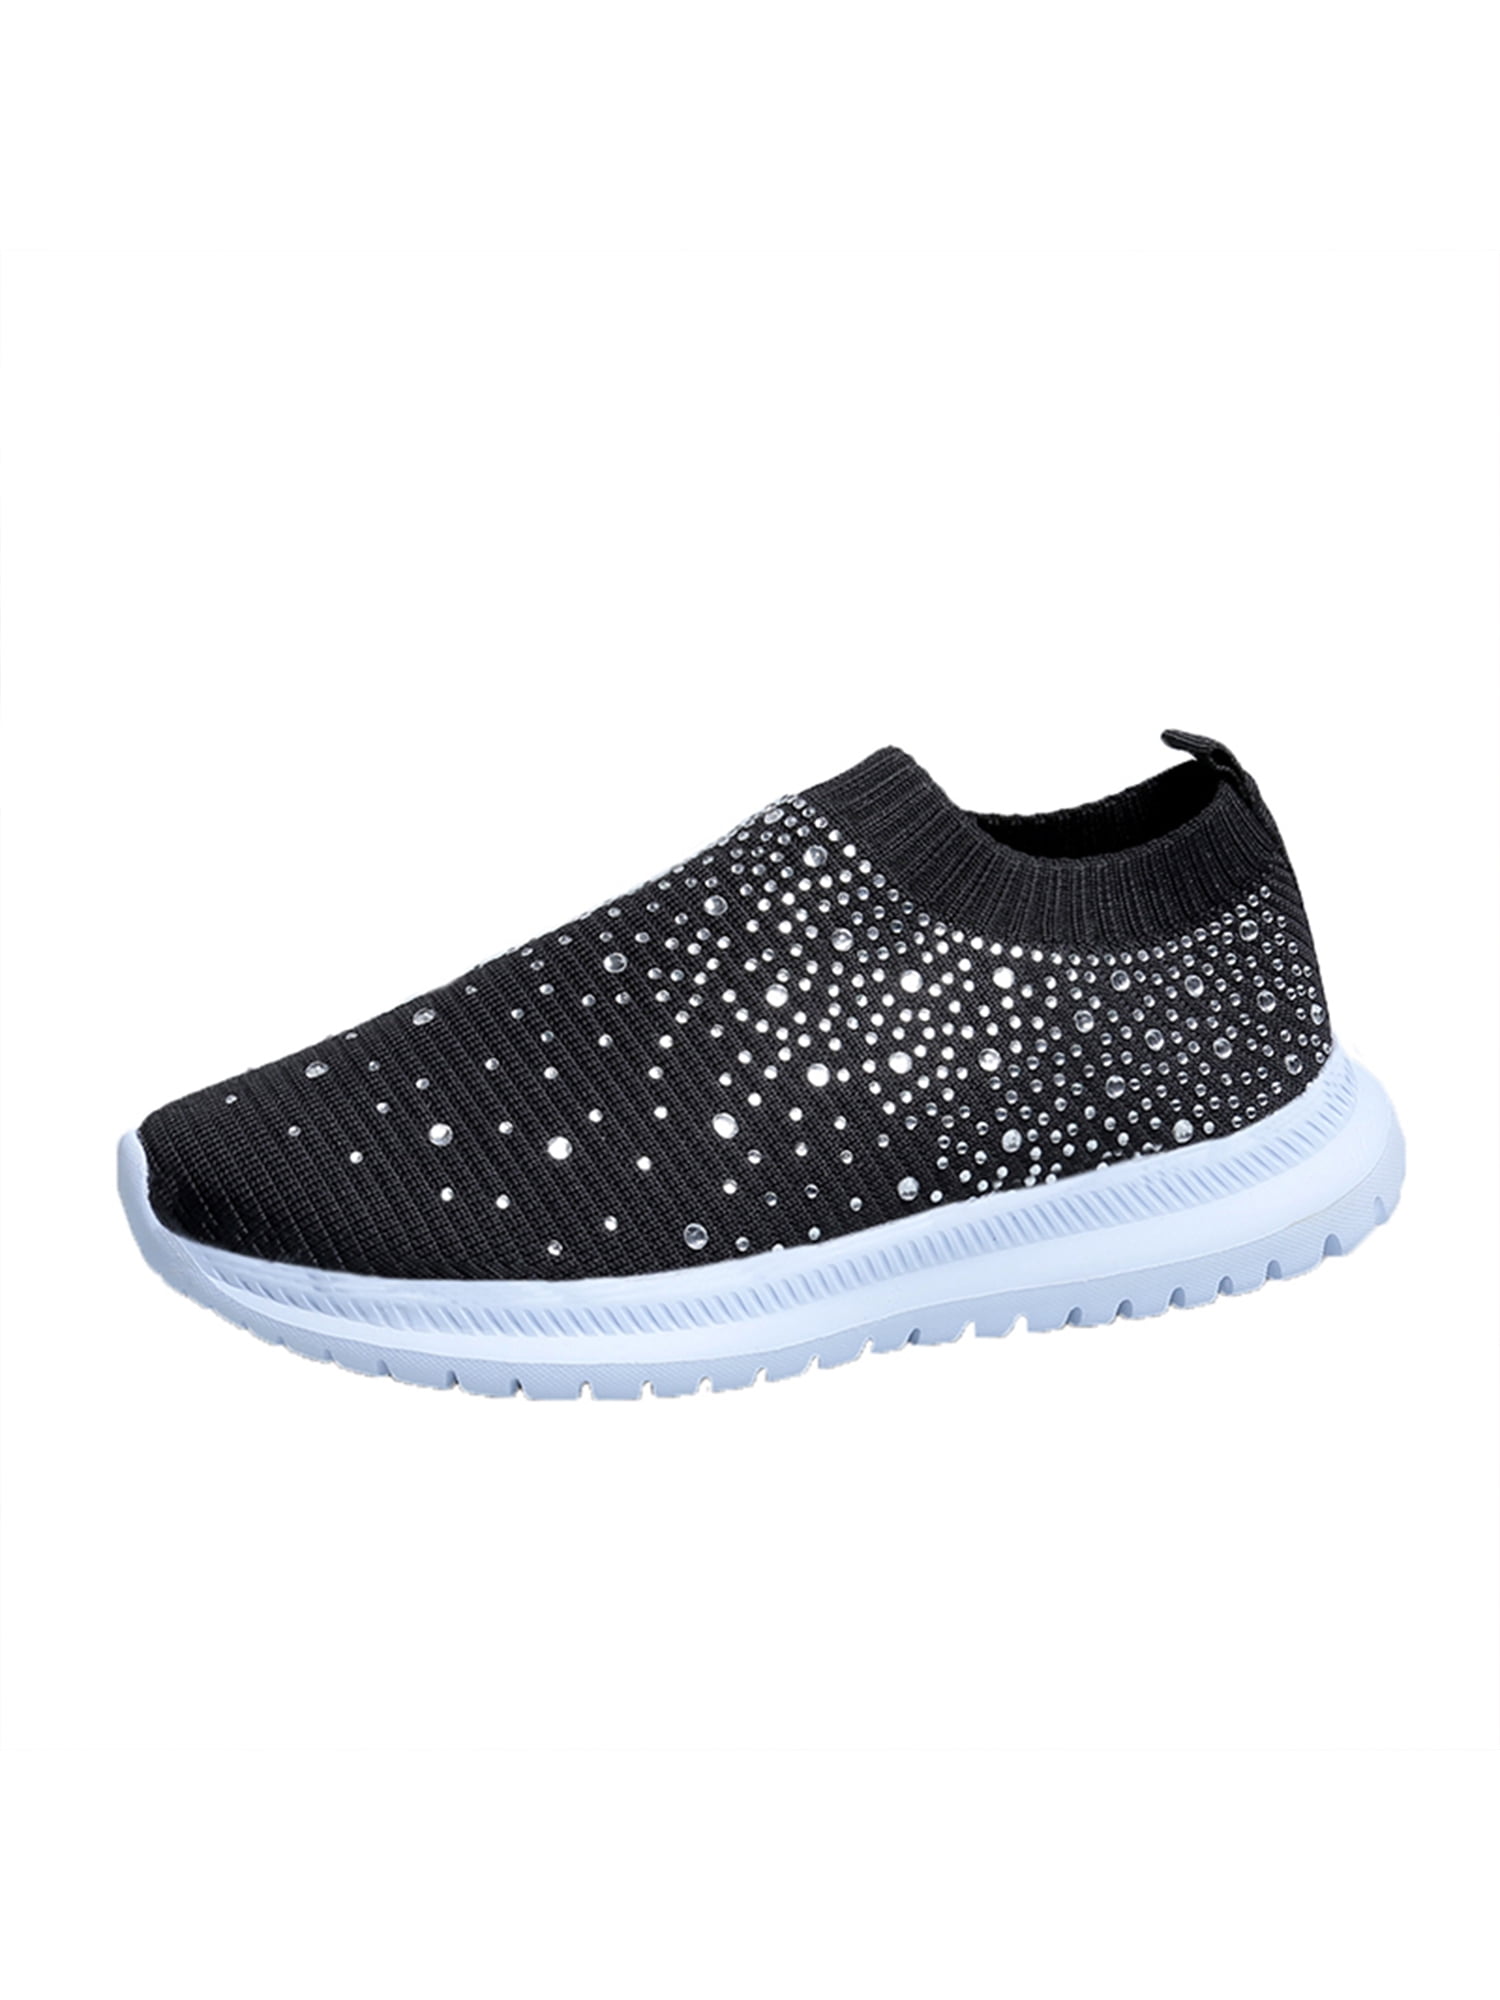 Kid's Sequin Glitter Sneaker Tennis Lightweight Comfort Walking Shoes